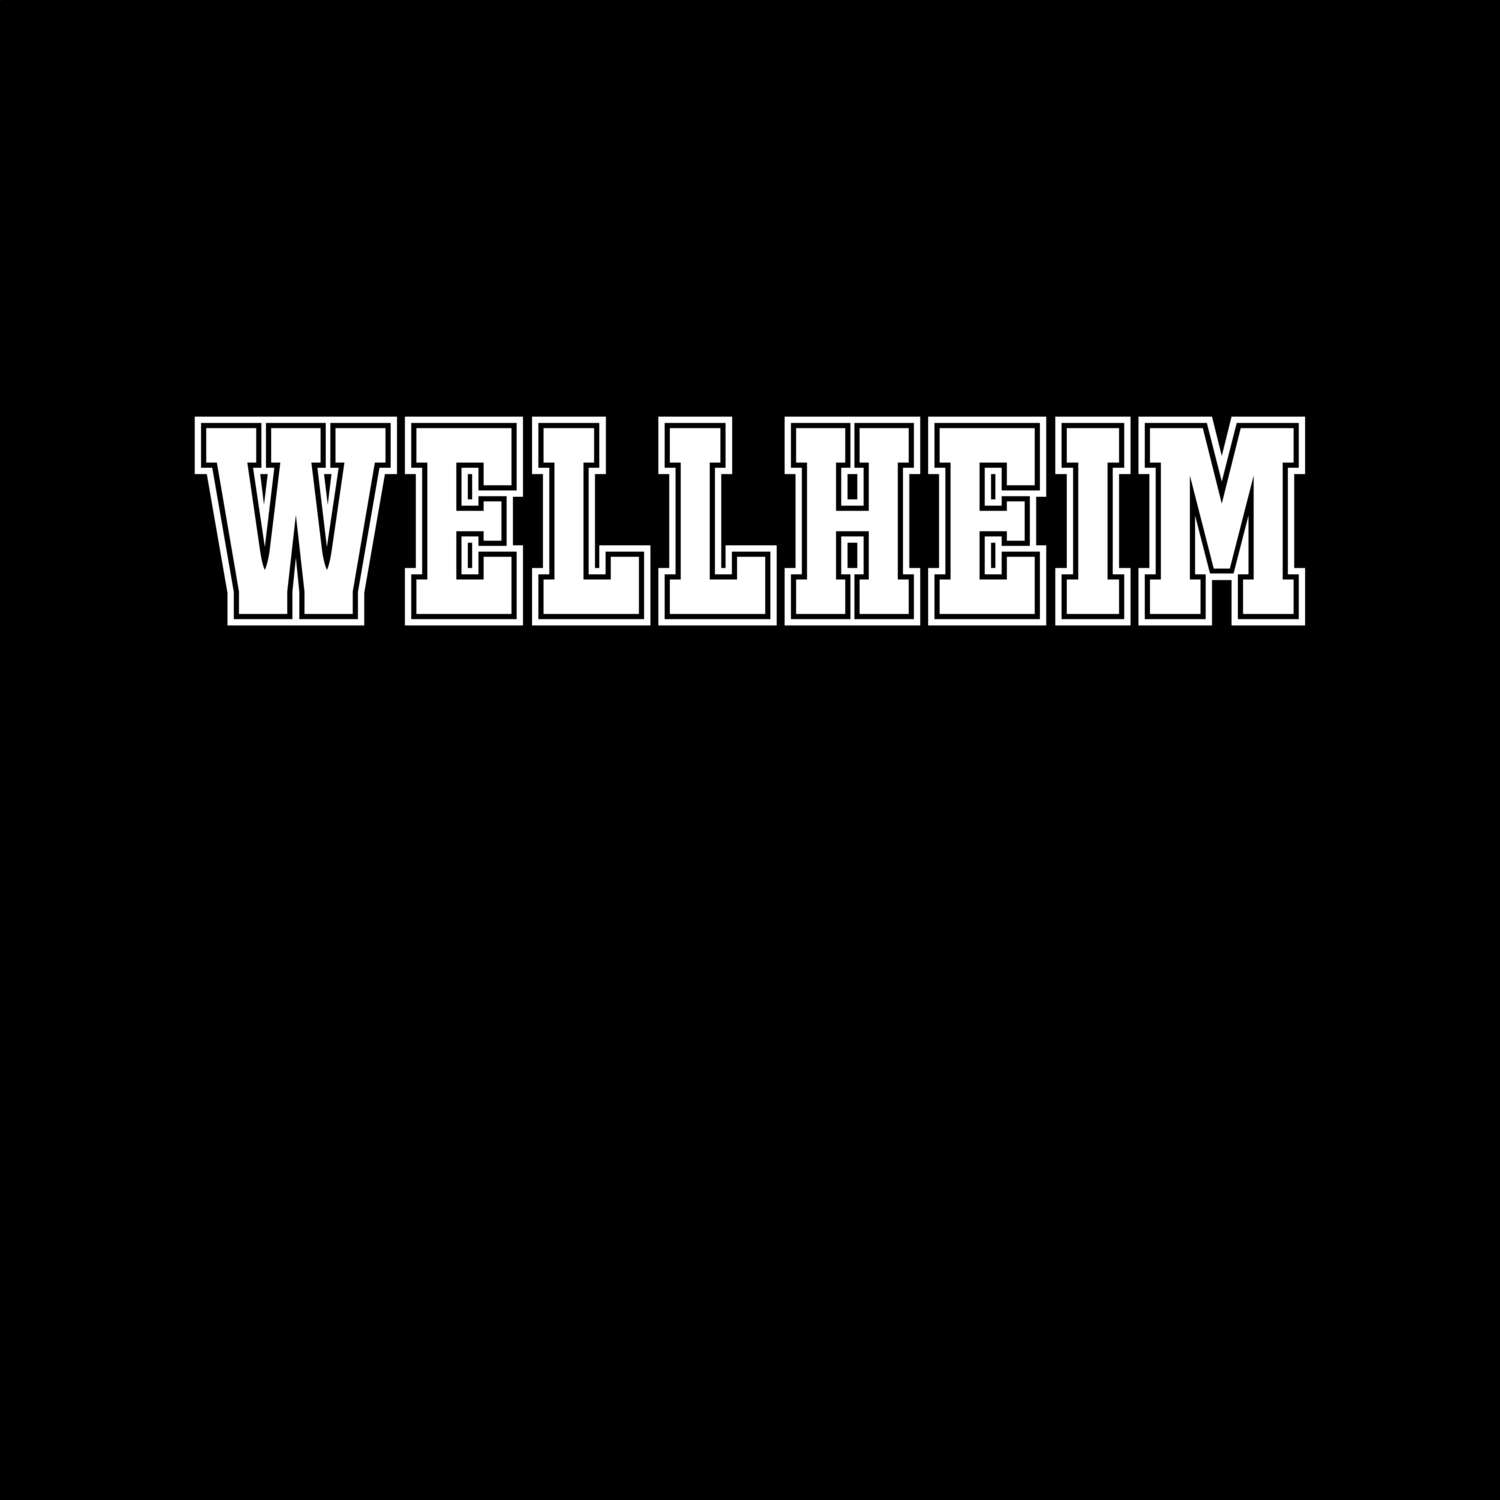 Wellheim T-Shirt »Classic«